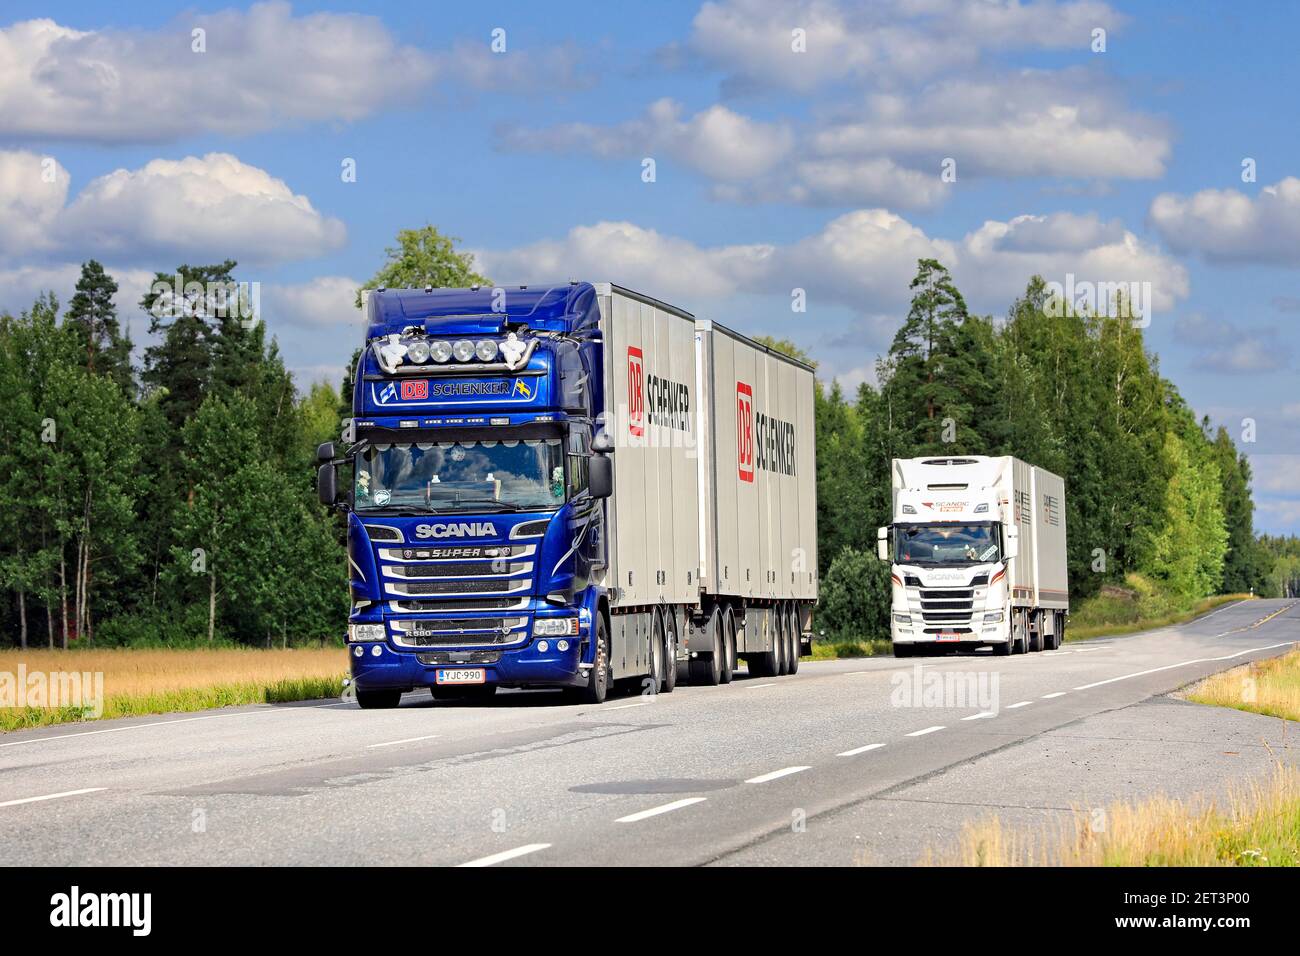 Zwei Scania-Gütertransportwagen, blaue DB Schenker im Vordergrund, transportieren im Sommer Güter auf dem Highway 10. Jokioinen, Finnland. 7. August 2020 Stockfoto